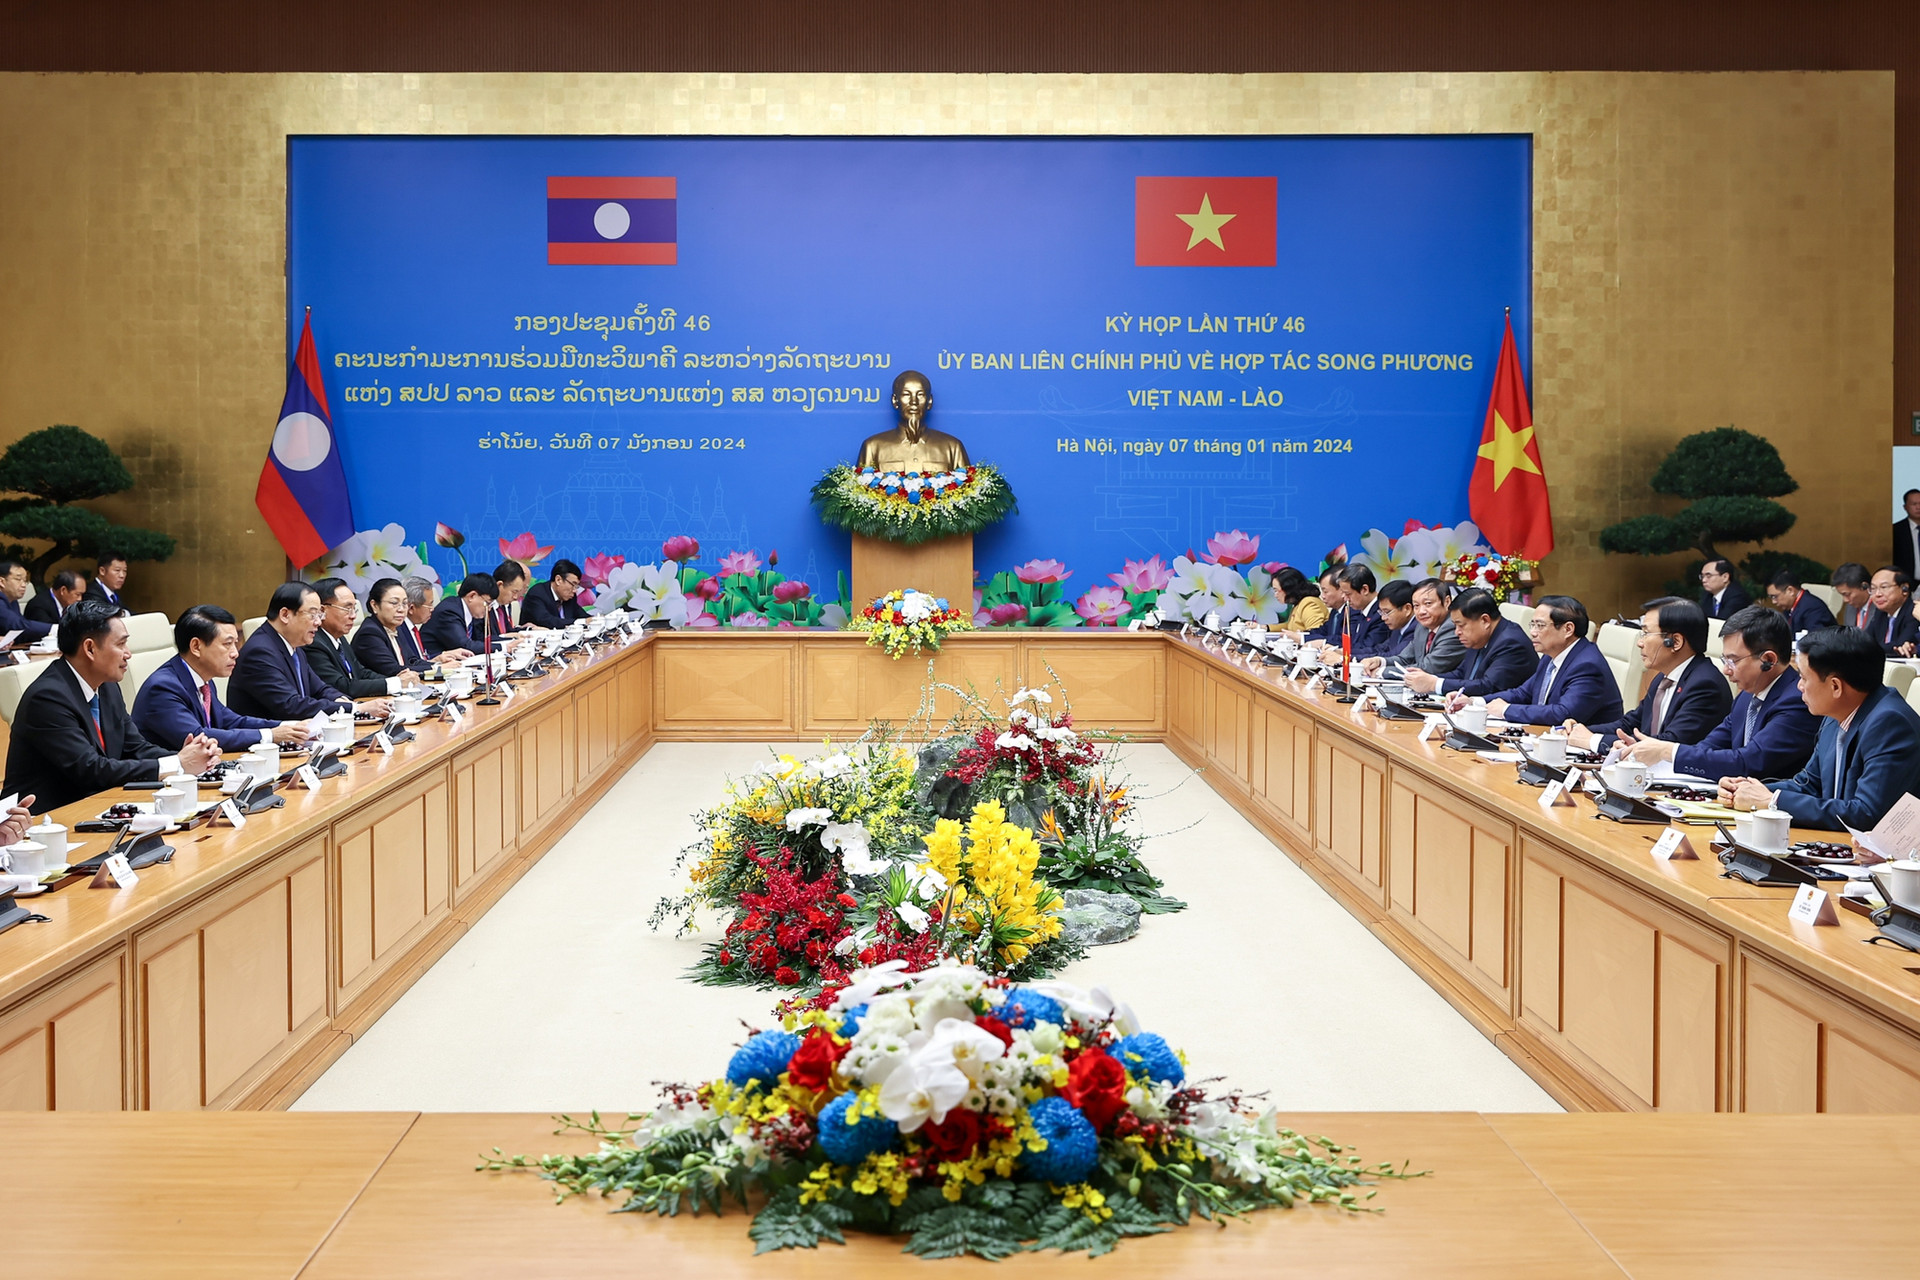 Thủ tướng Phạm Minh Chính và Thủ tướng Lào đồng chủ trì kỳ họp lần thứ 46 Ủy ban liên Chính phủ về hợp tác song phương- Ảnh 2.